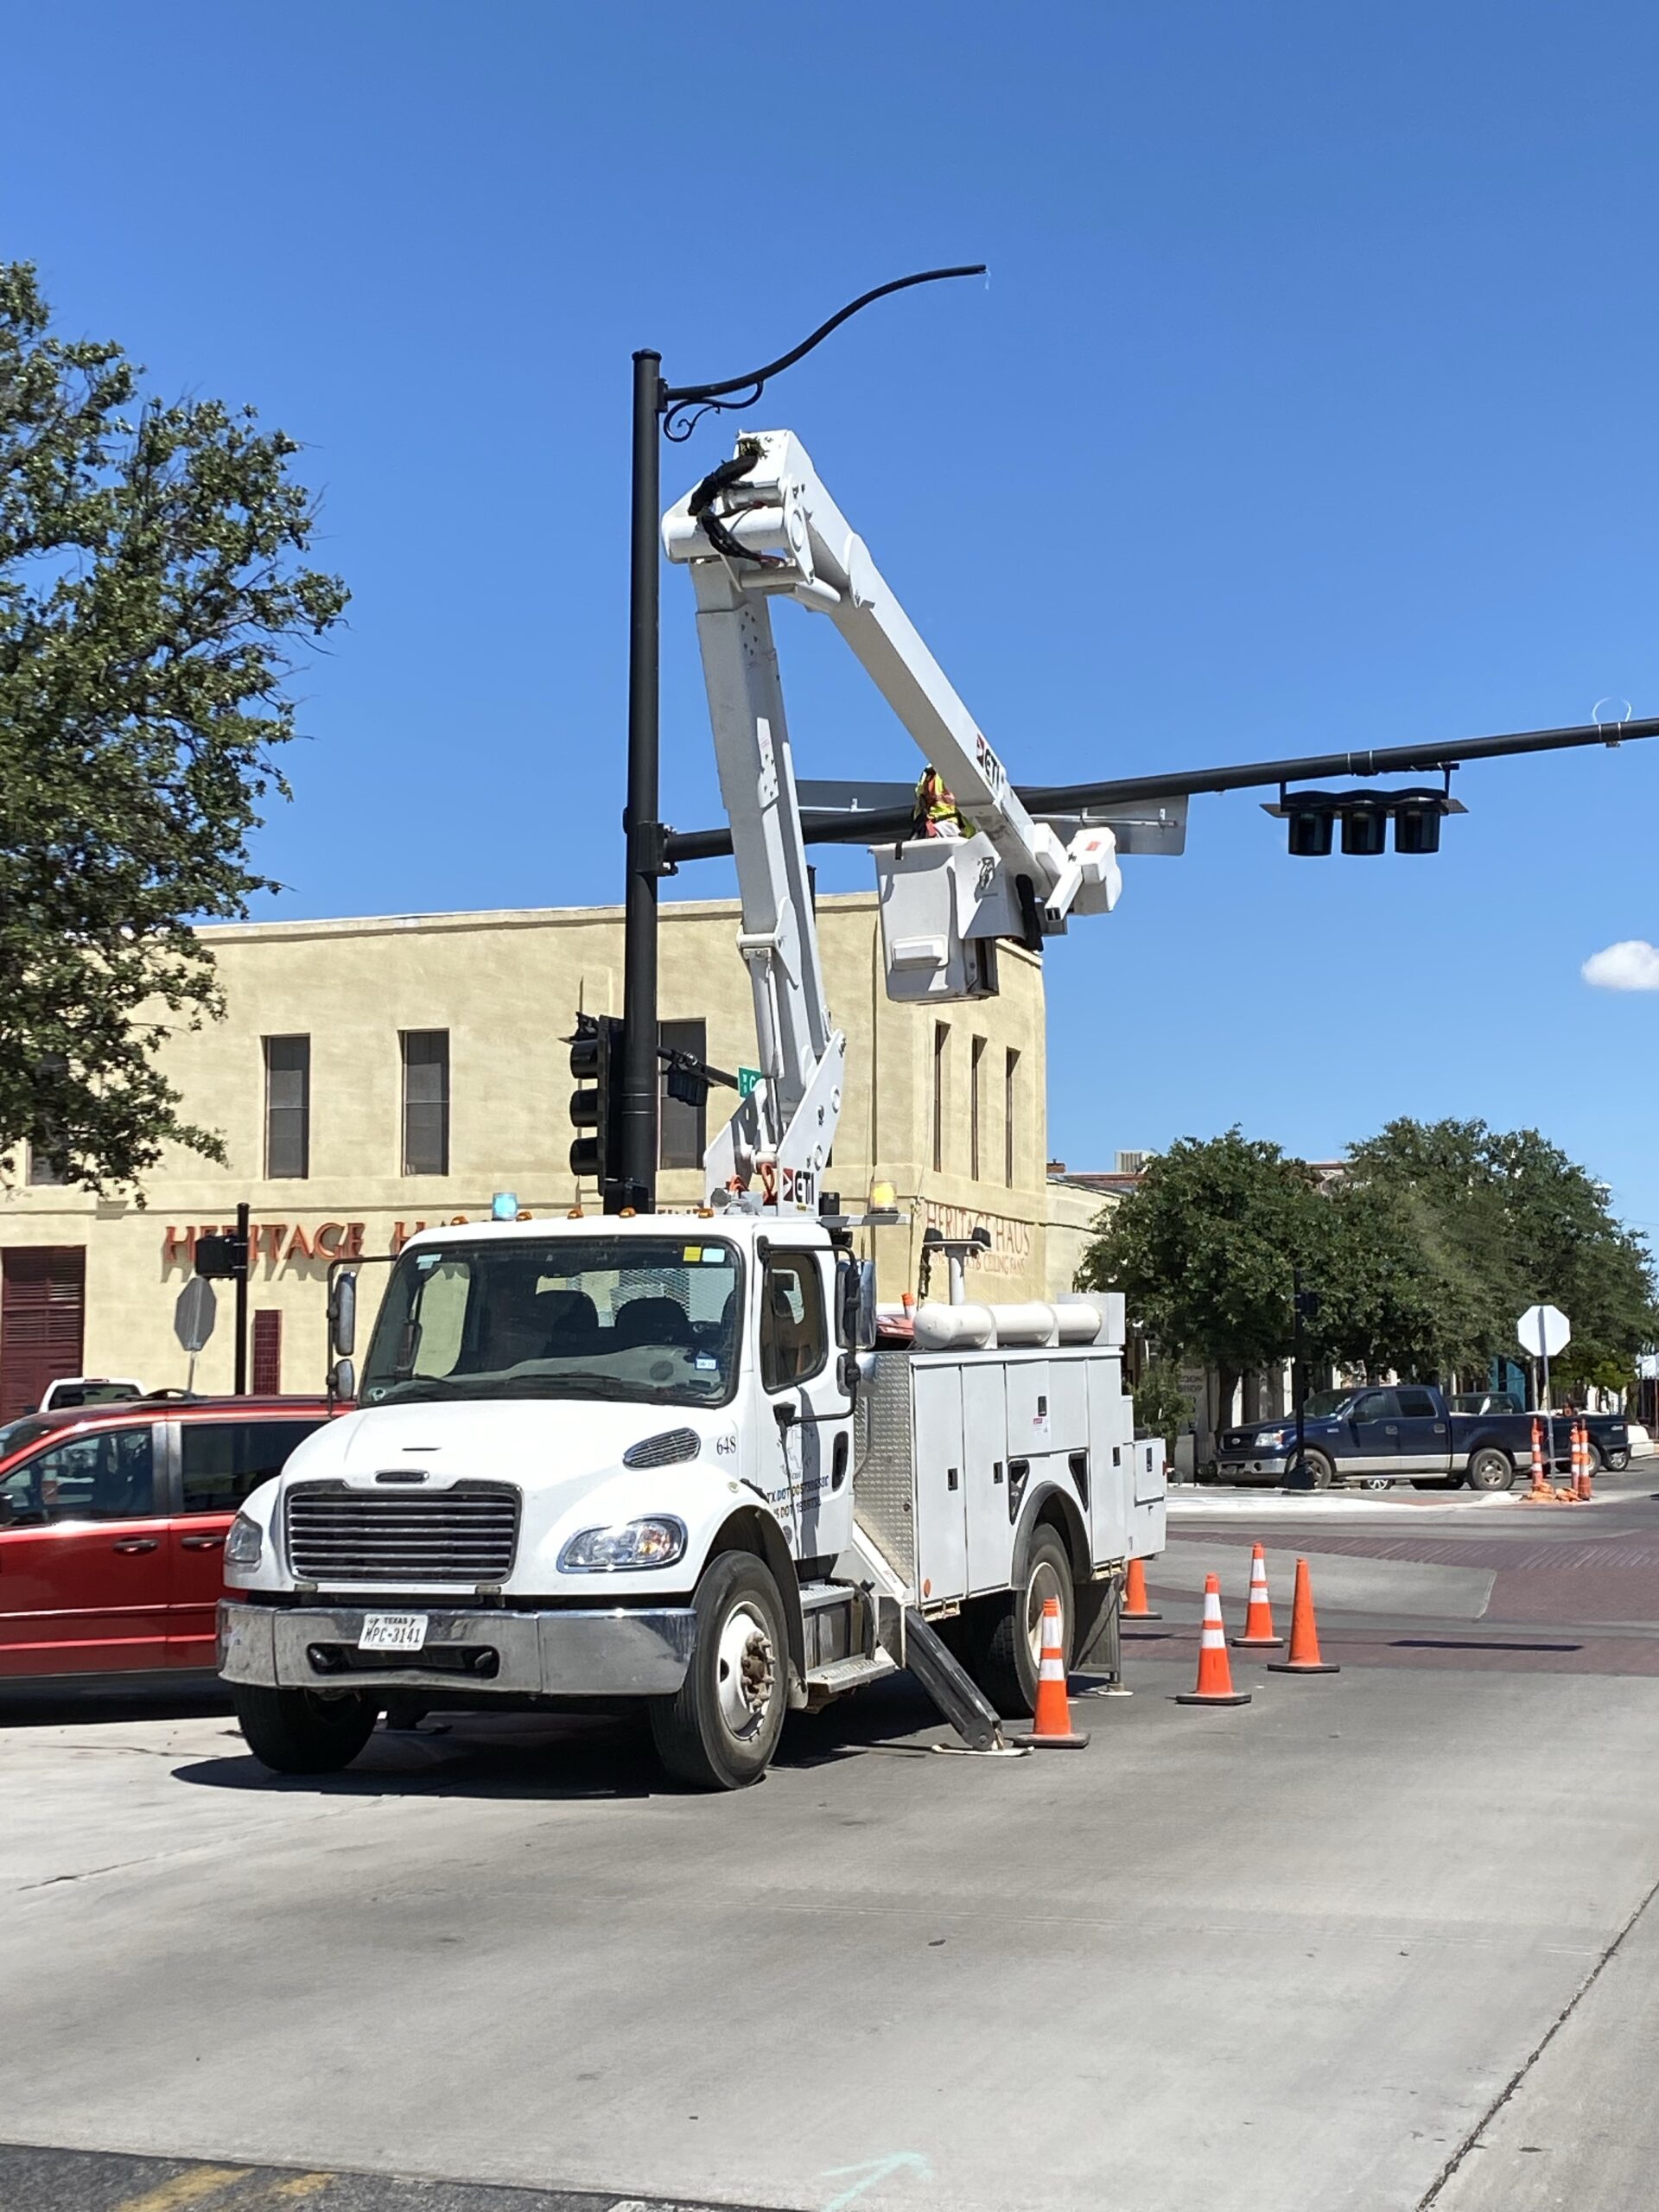 TxDOT Bucket Truck installing traffic signals